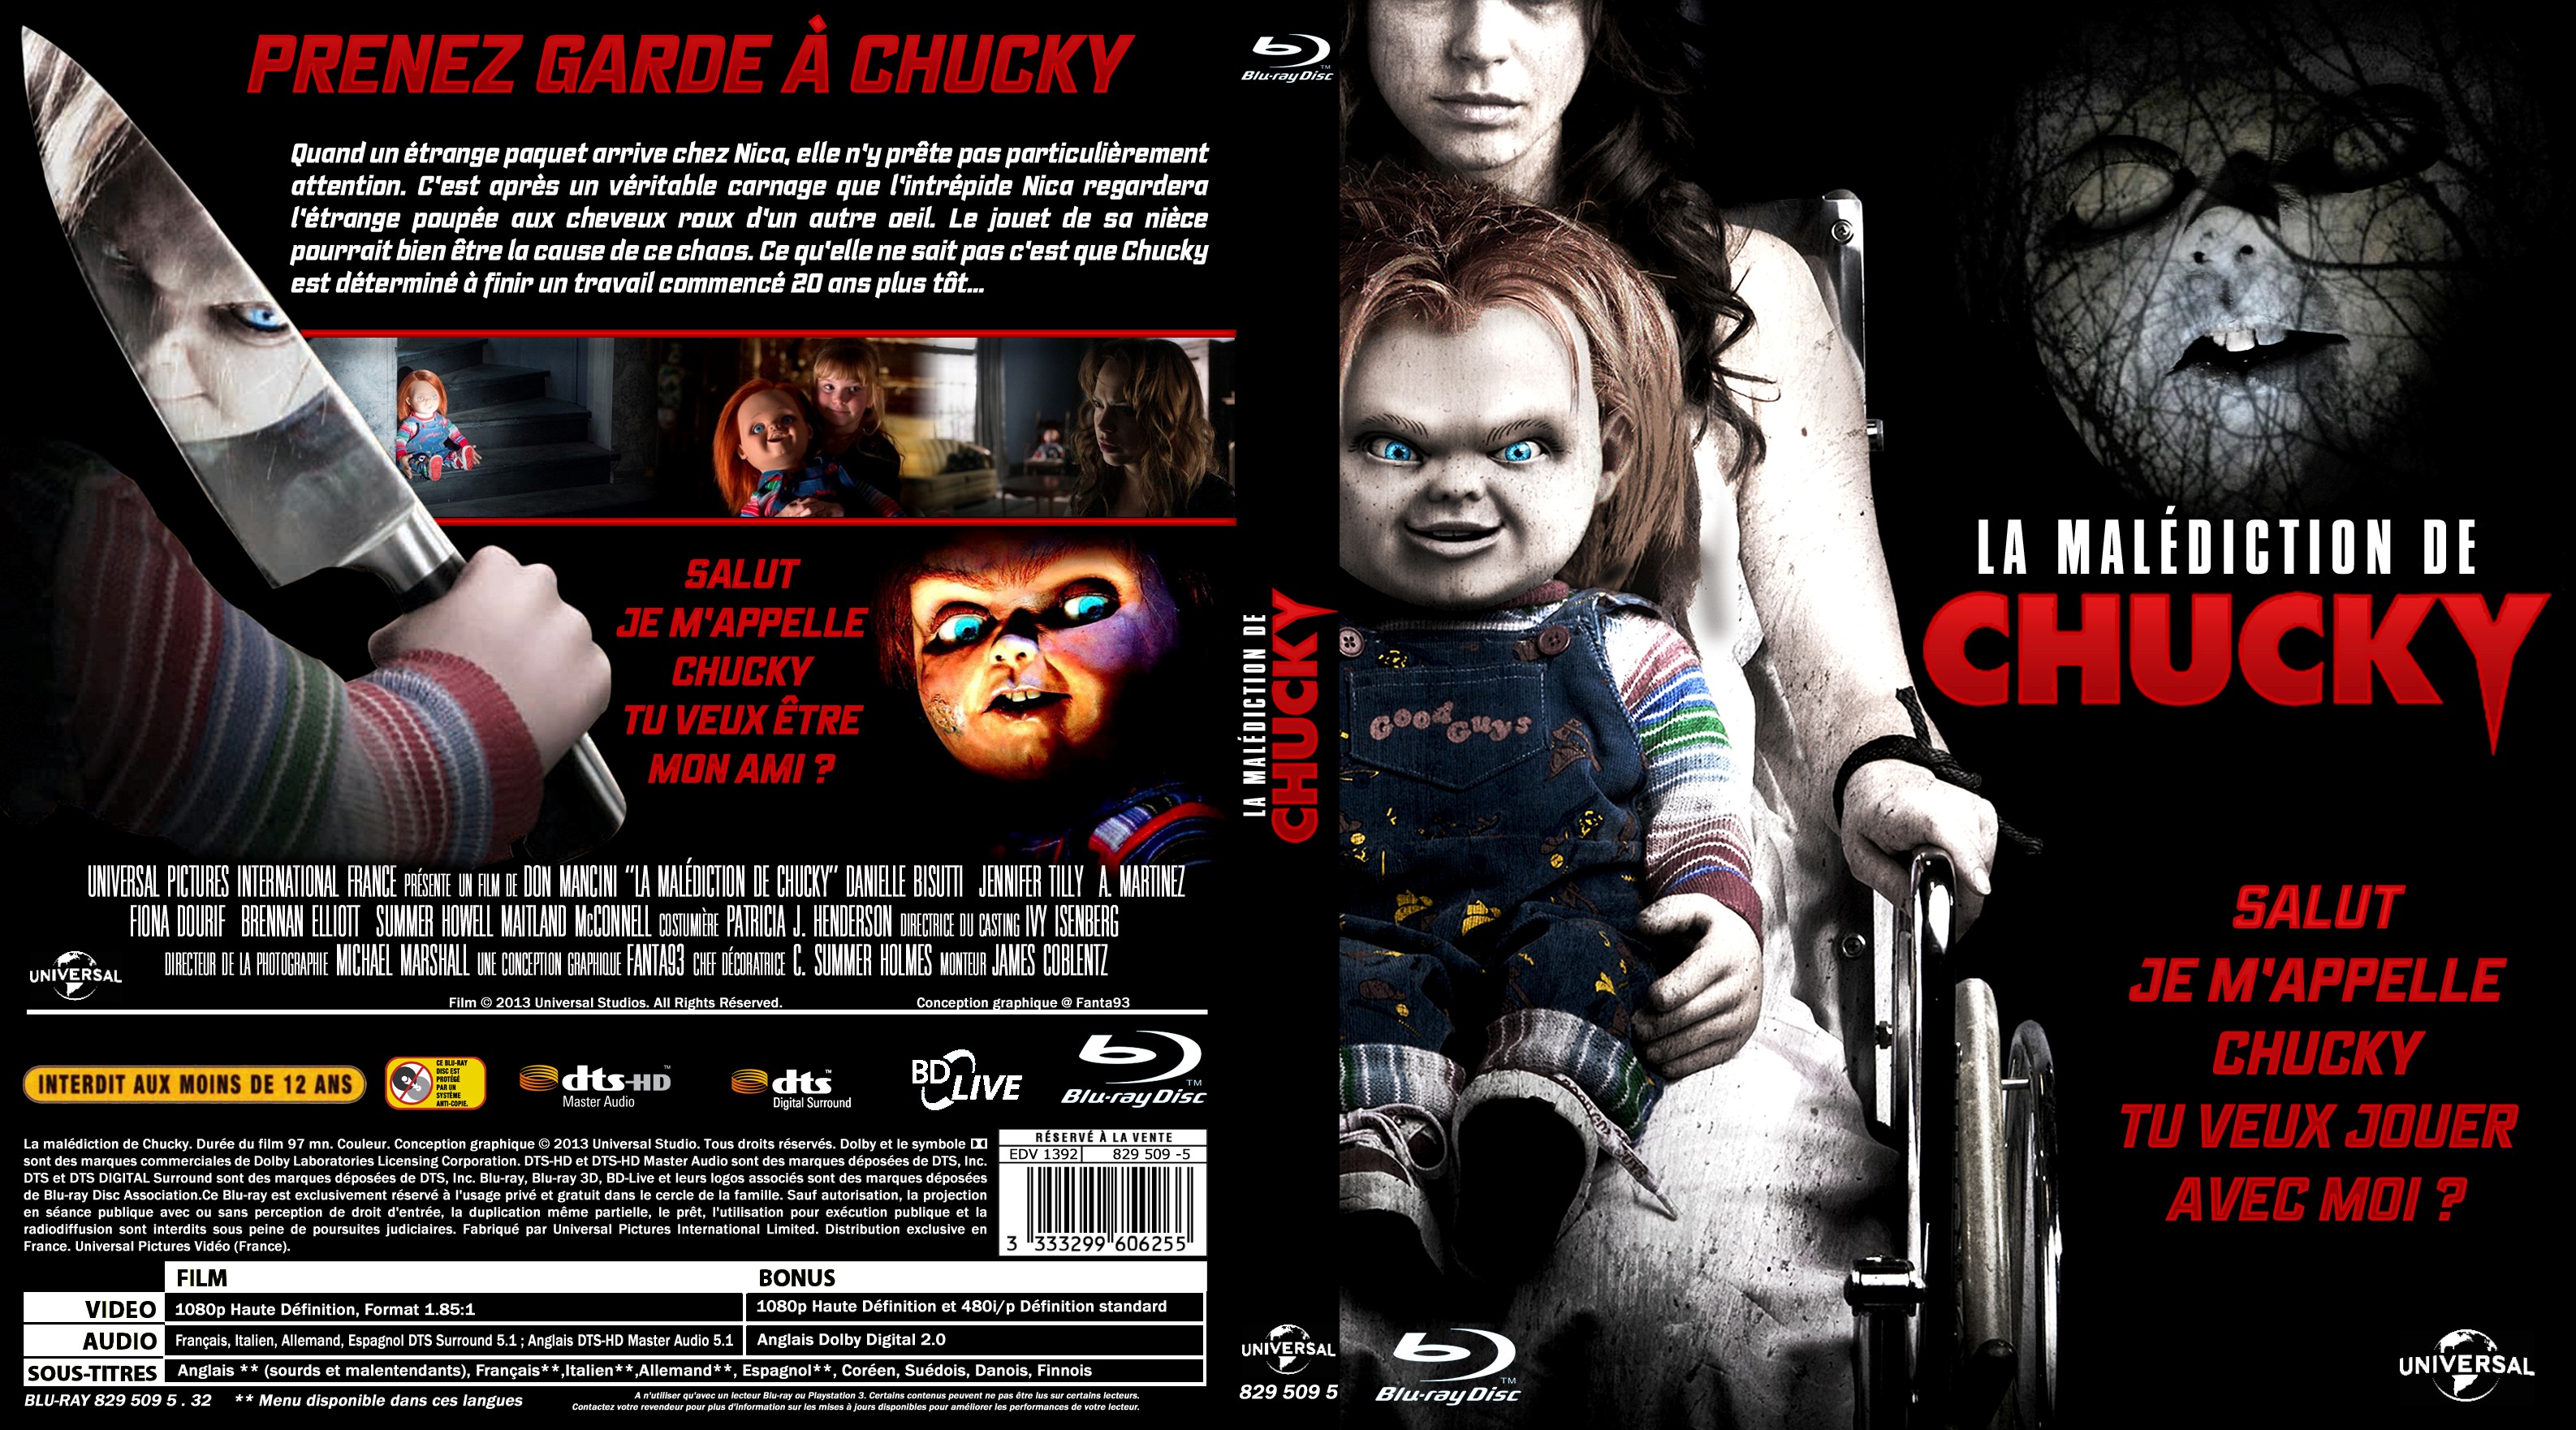 Jaquette DVD La maldiction de chucky custom (BLU-RAY)